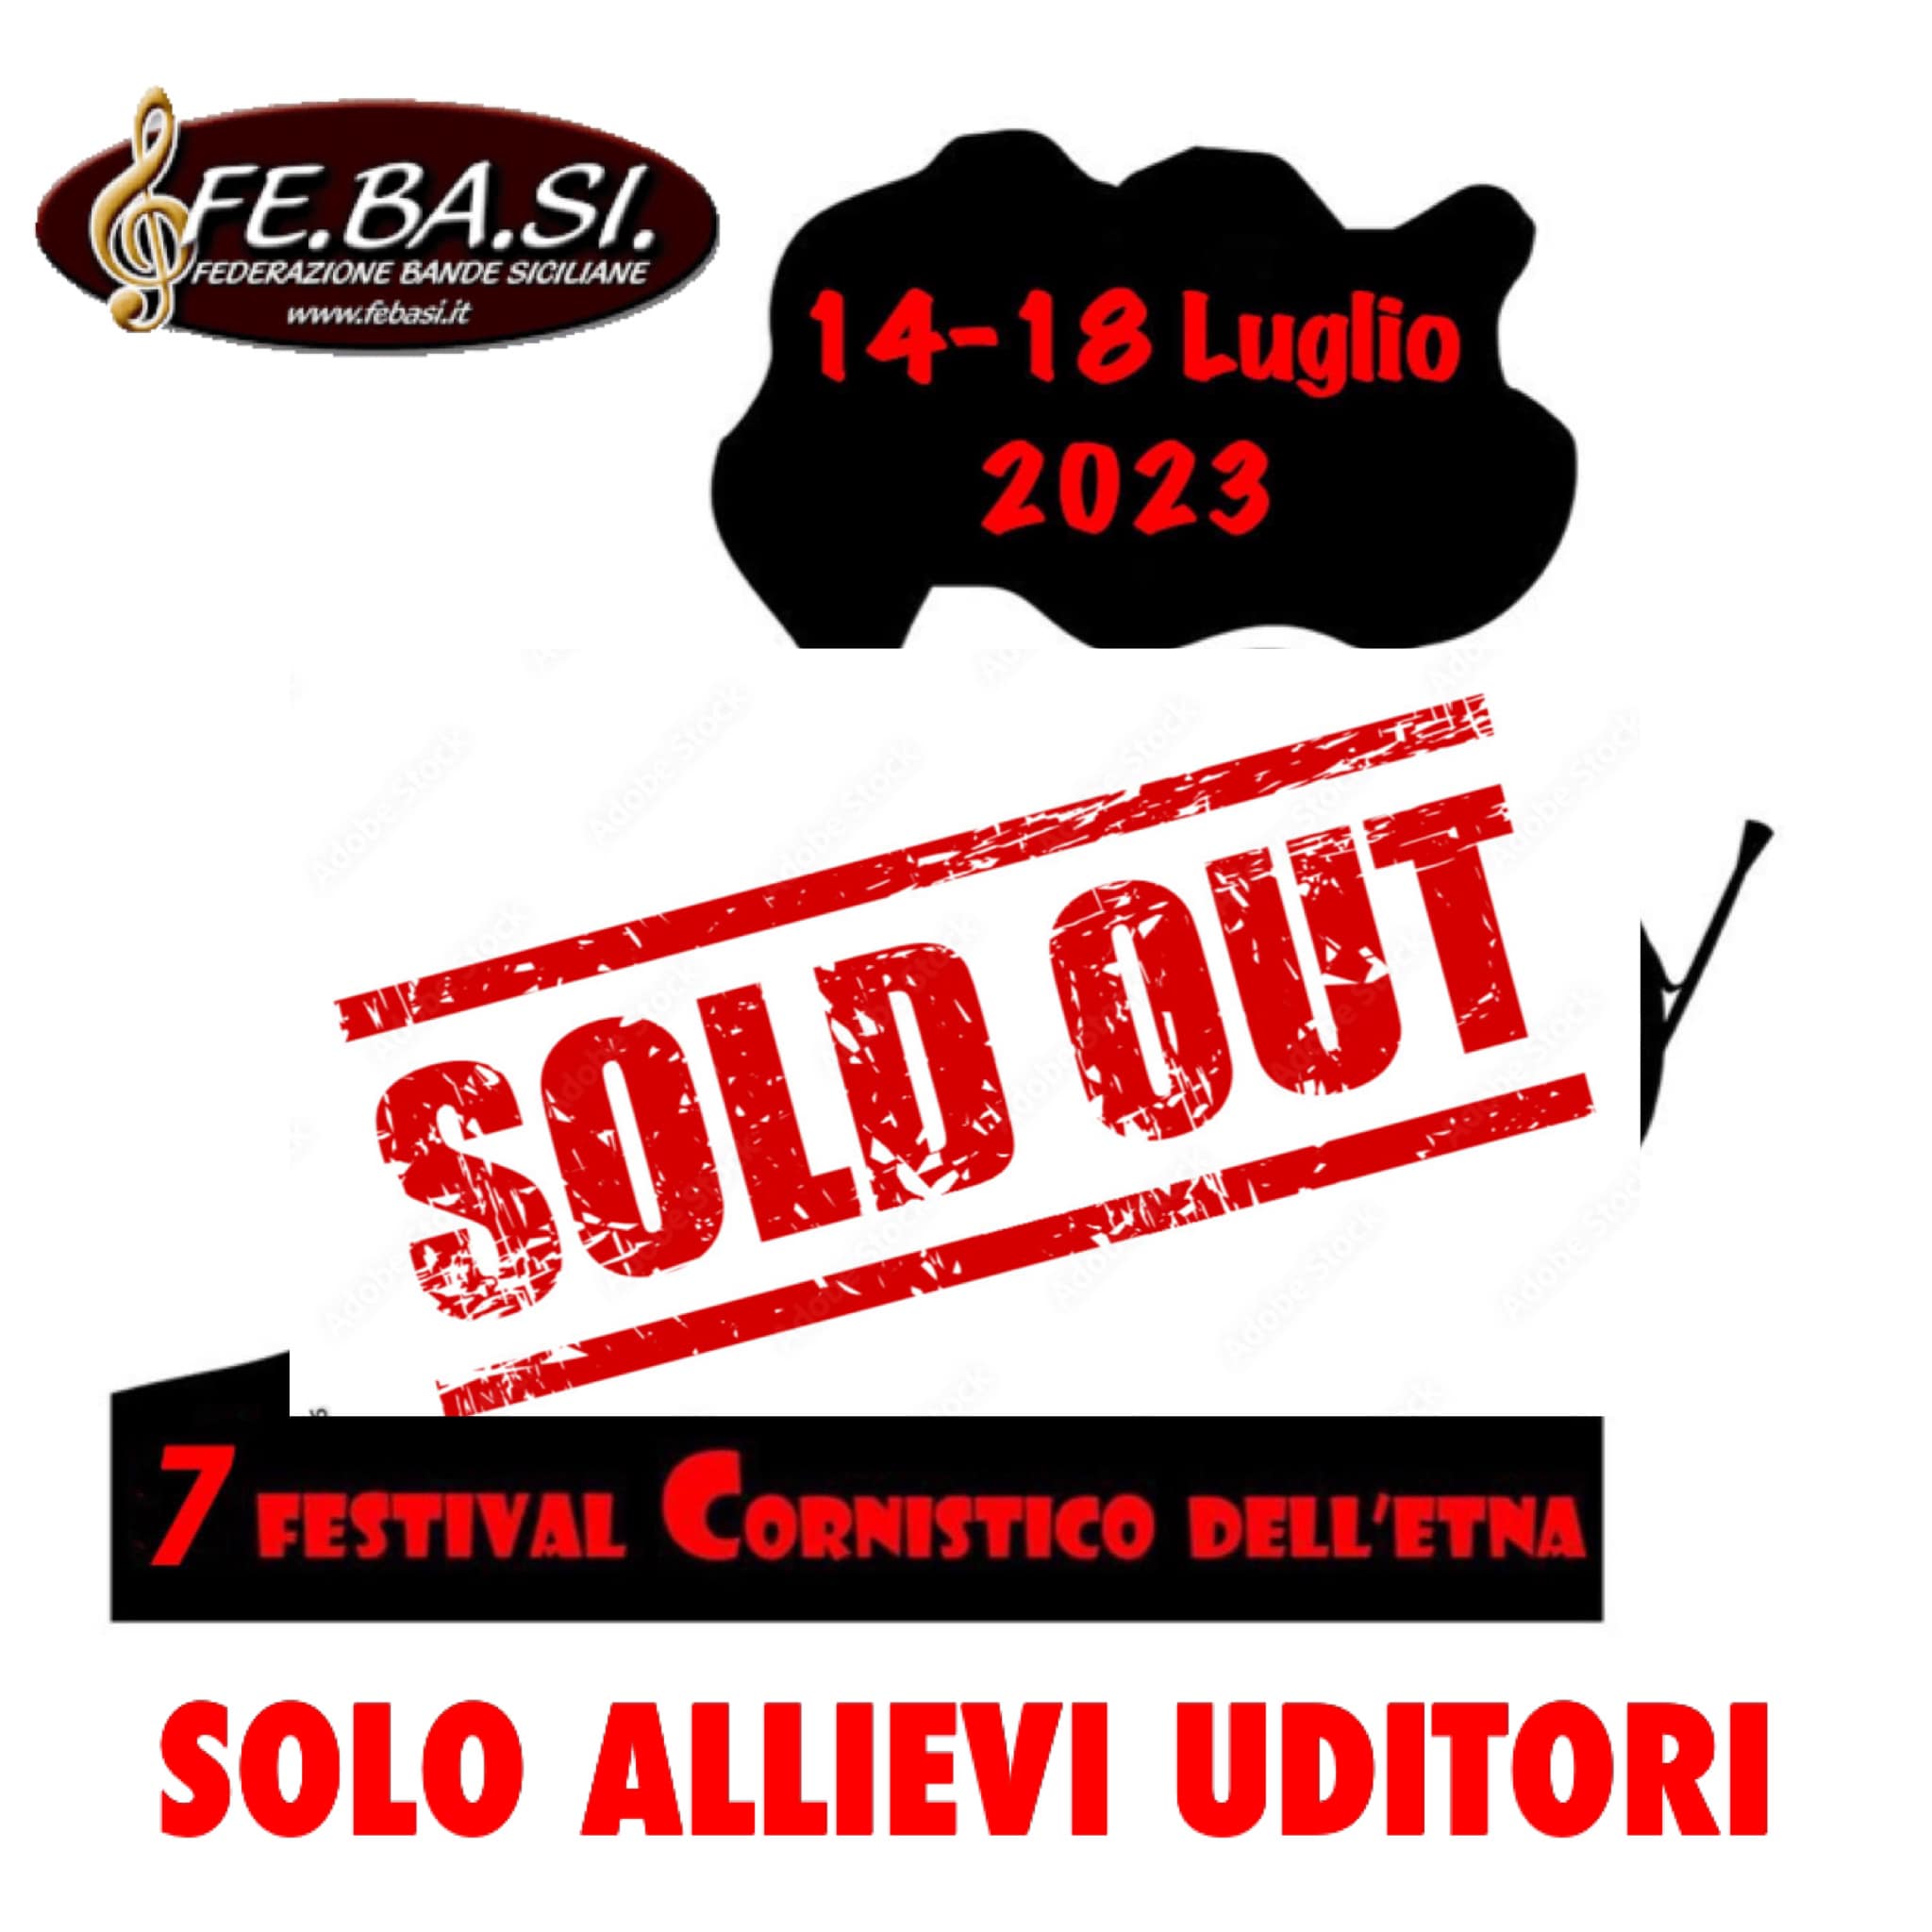 7° Festival Cornistico Dell’Etna 2023